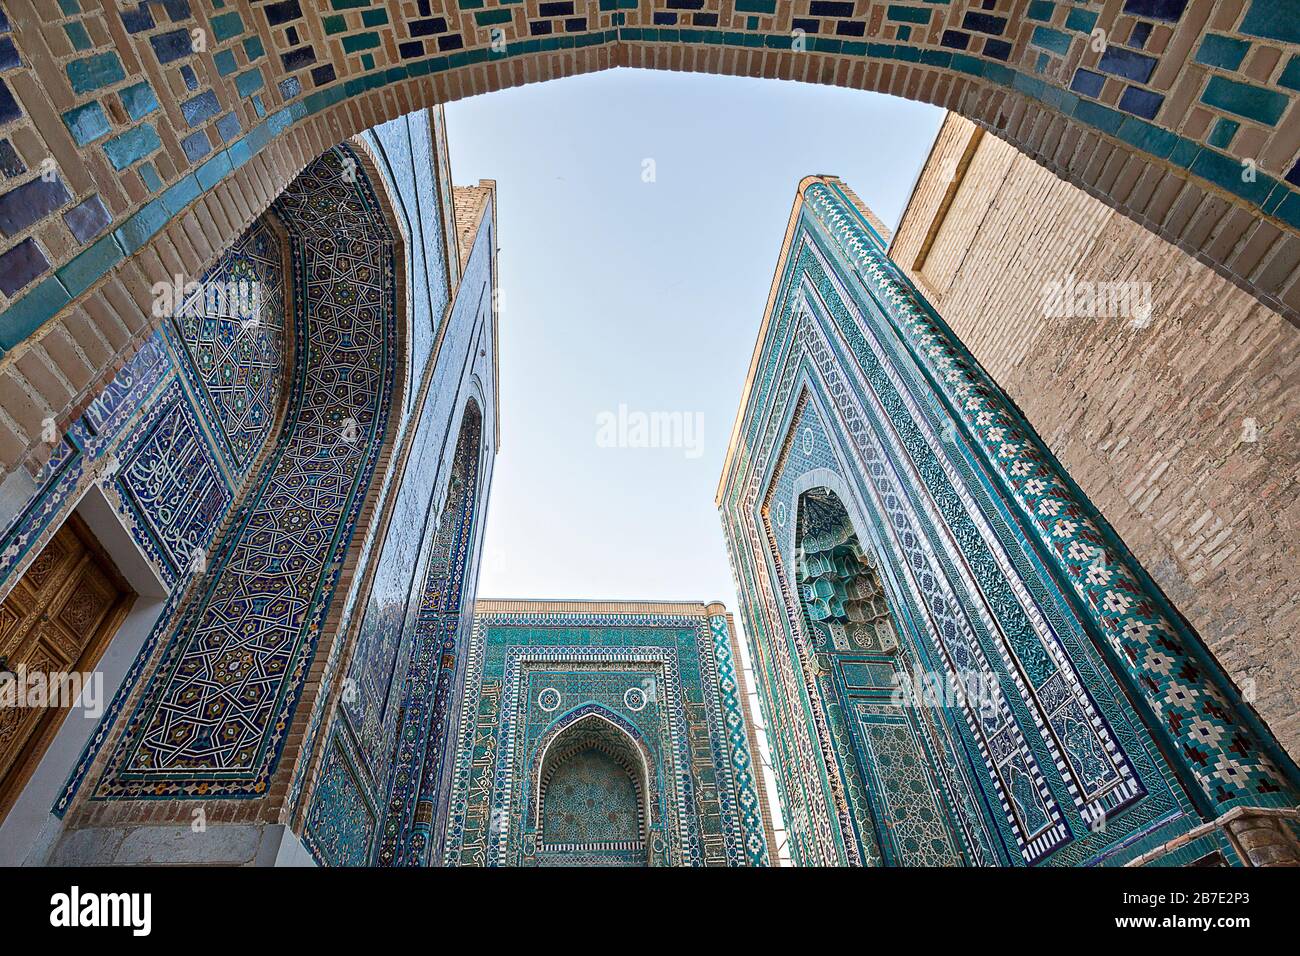 Historical cemetery of Shahi Zinda with its finely decorated mausoleums, Samarkand, Uzbekistan Stock Photo